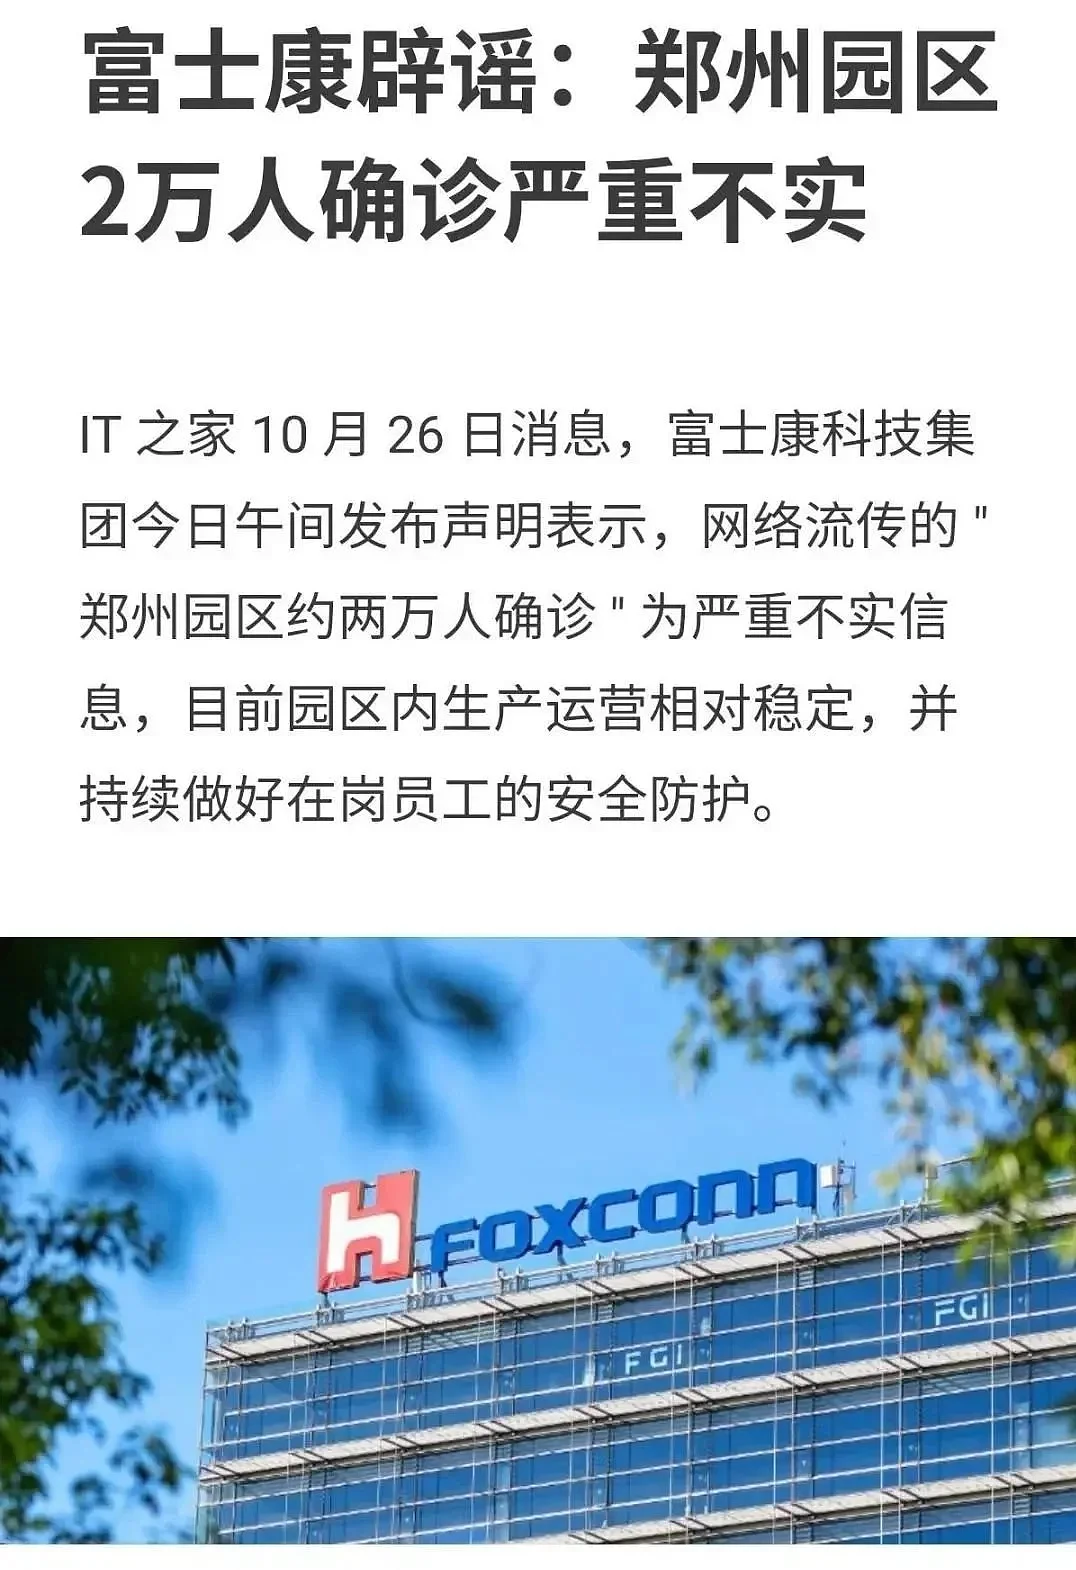 ▲10月26日，富士康发声明称网上流传的“郑州园区2万人确诊”为严重不实消息。